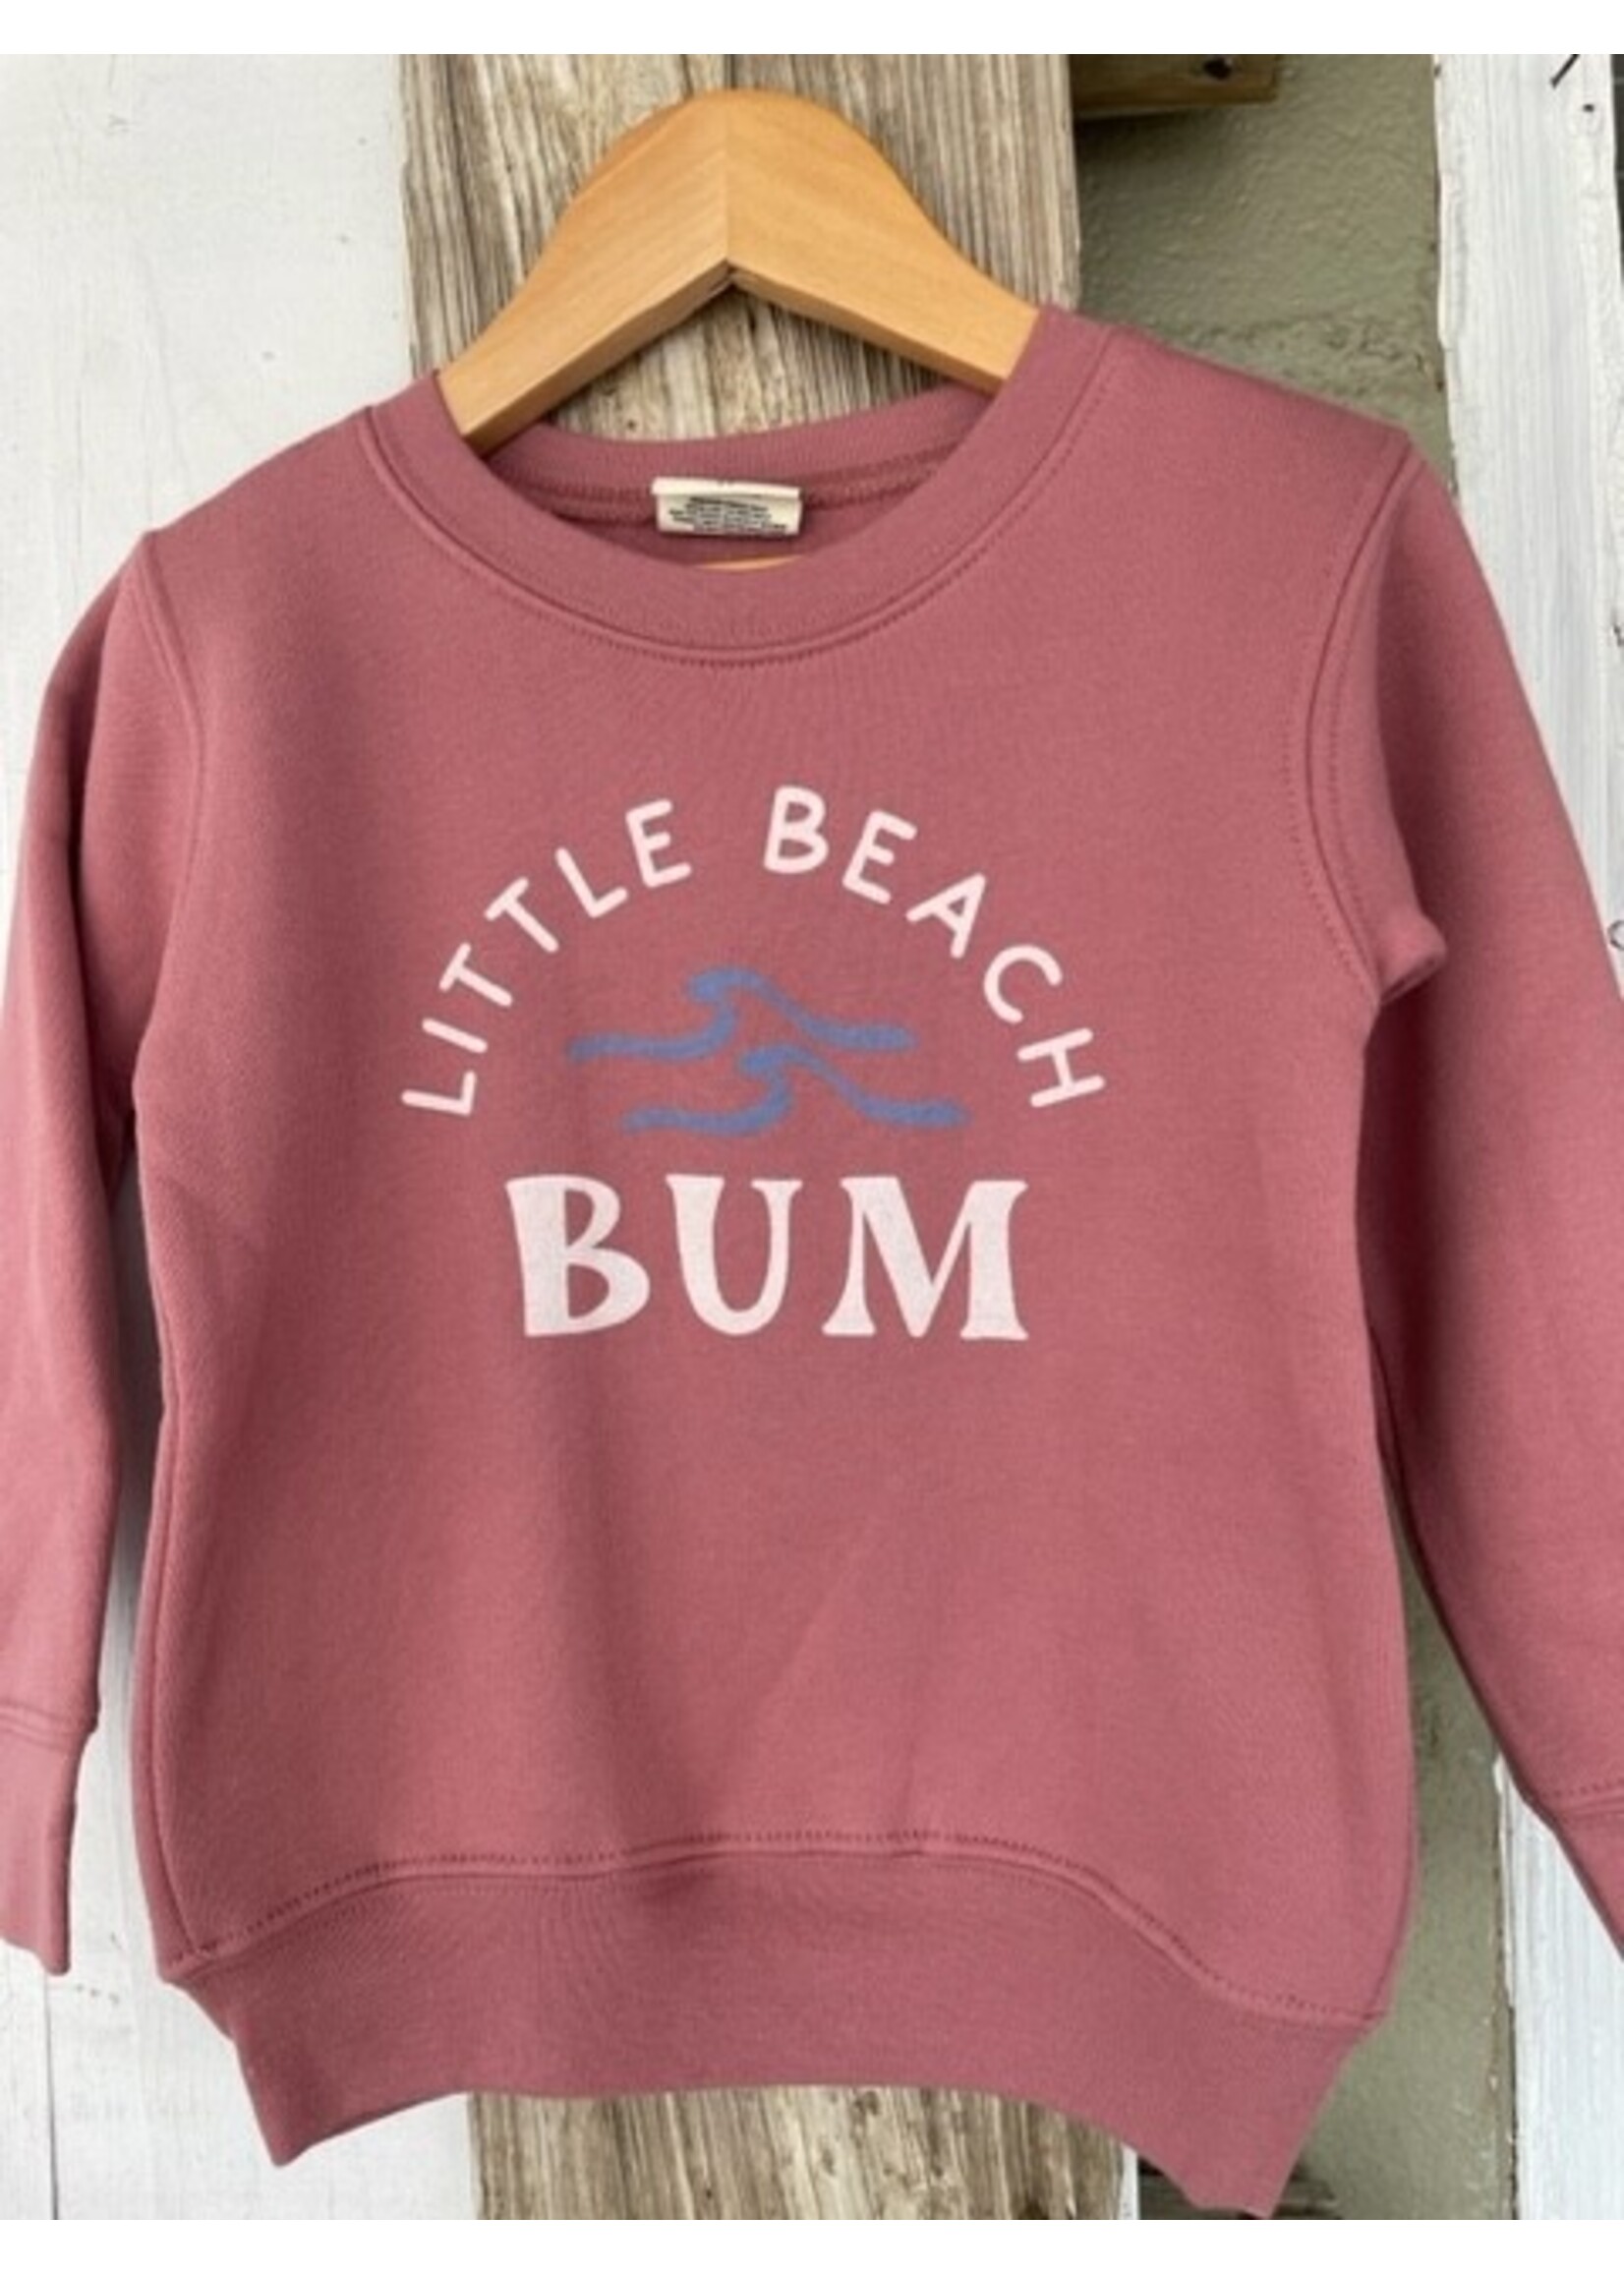 Little Beach Bum Sweatshirt